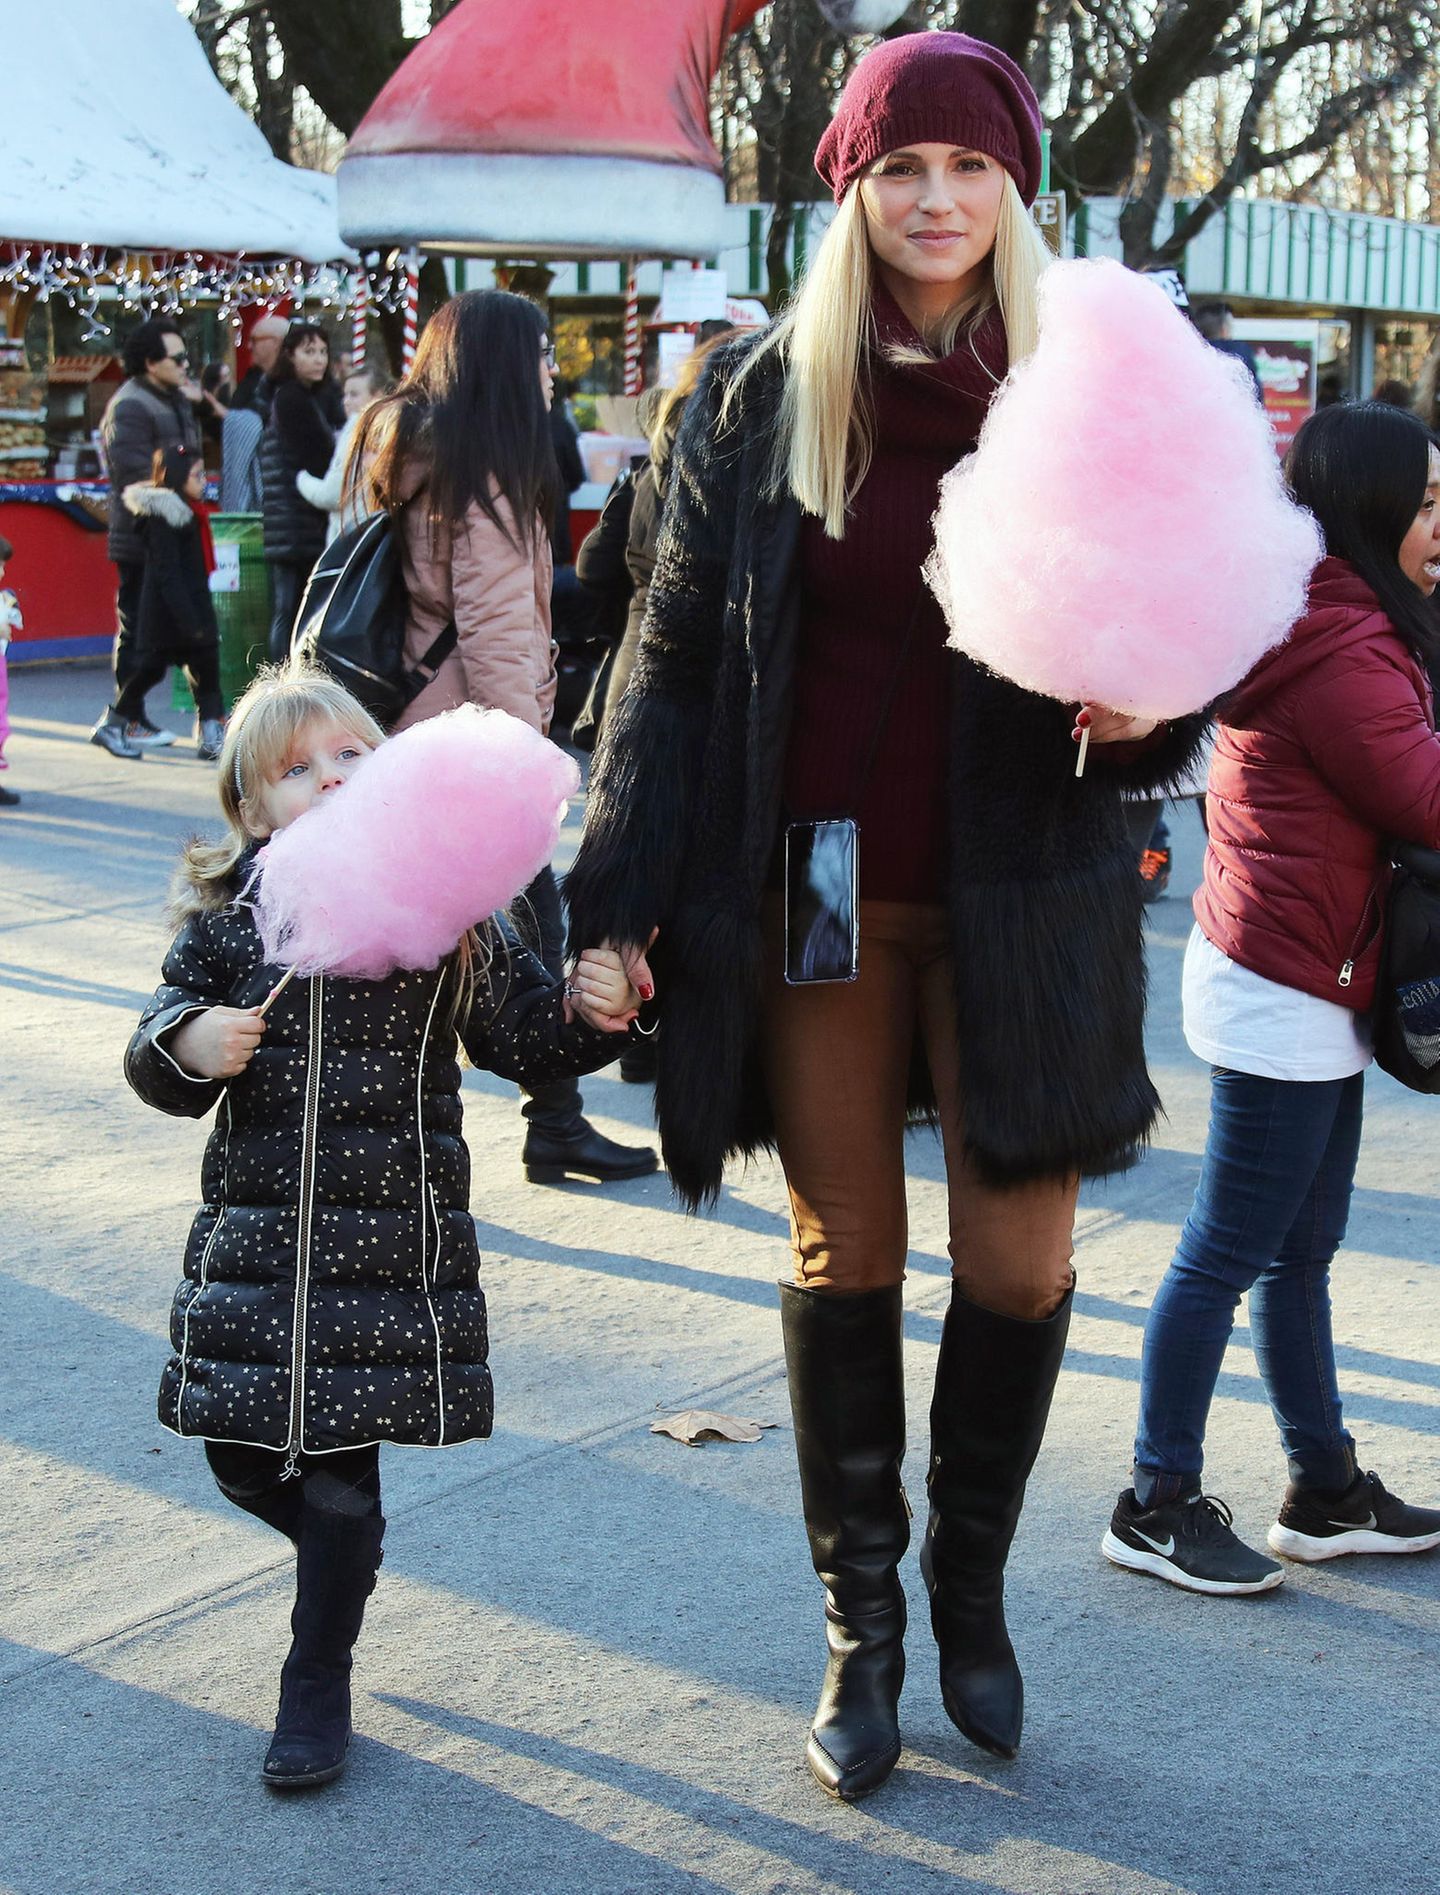 23. Dezember 2019  Noch süßer wird es nur noch als sich Mama und ihre Mädels eine rosarote Zuckerwatte auf dem Weihnachtsmarkt gönnen.